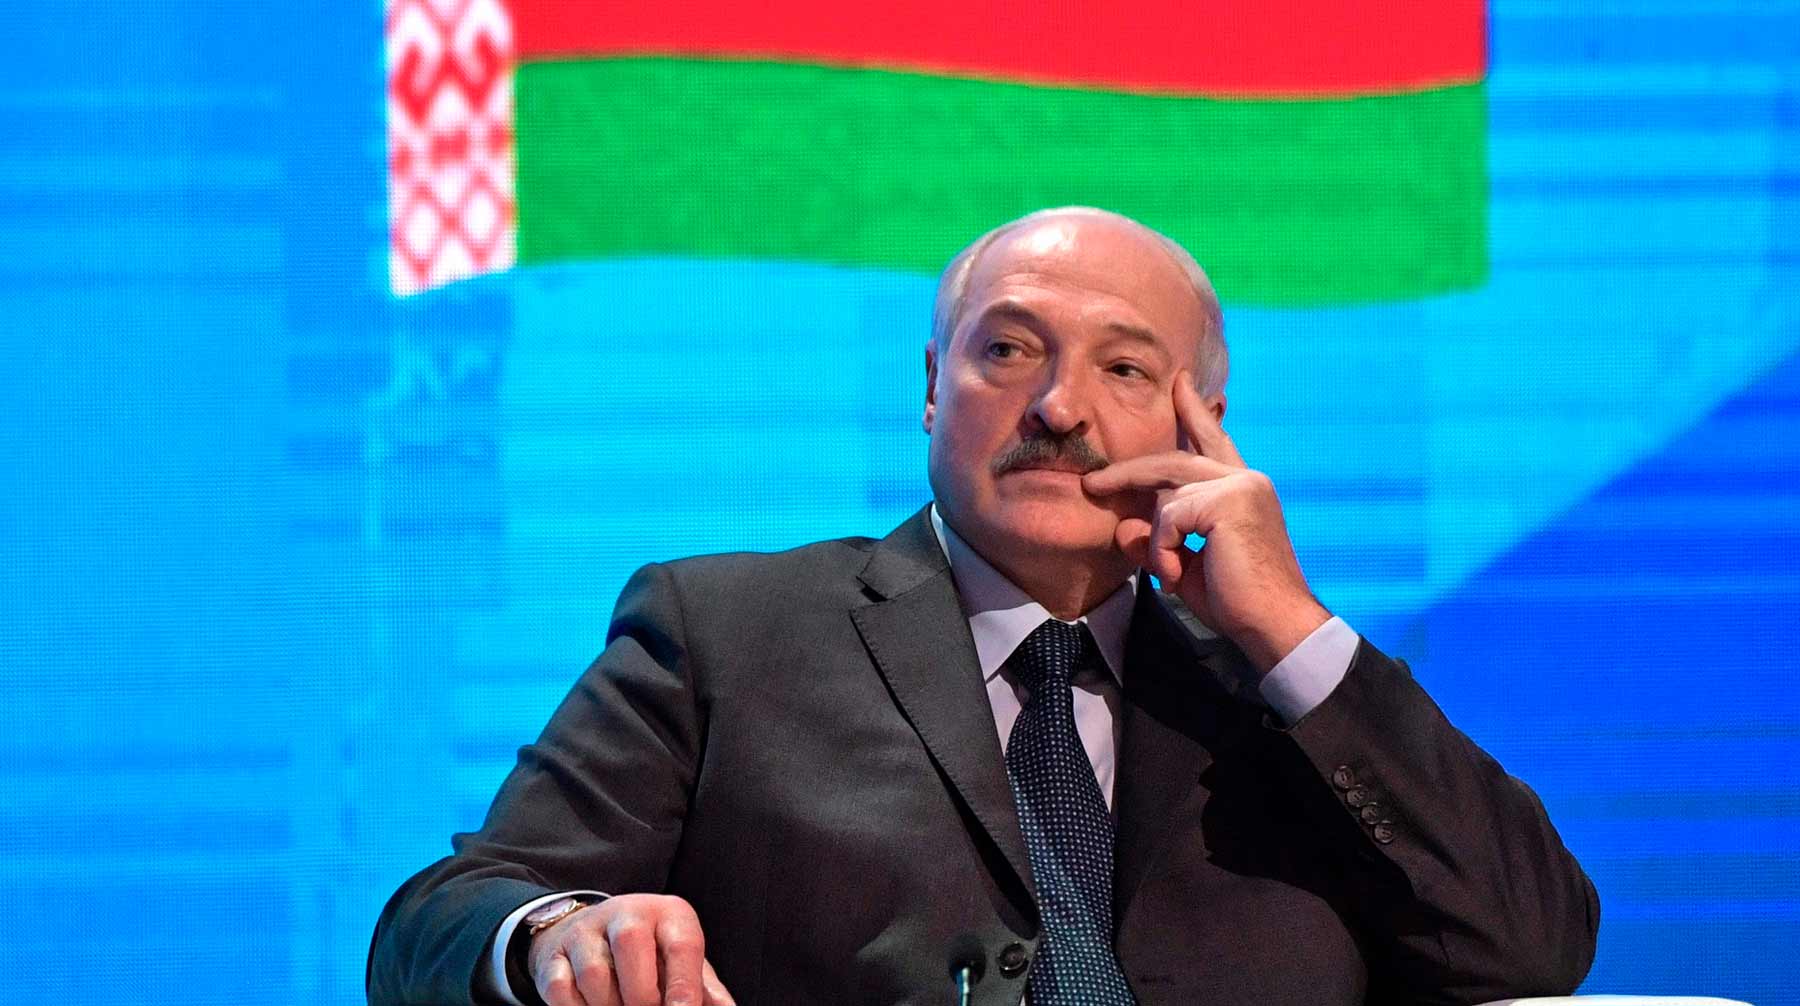 Законодатель Роберт Менендес назвал белорусского лидера «последним диктатором Европы» Фото: © kremlin.ru